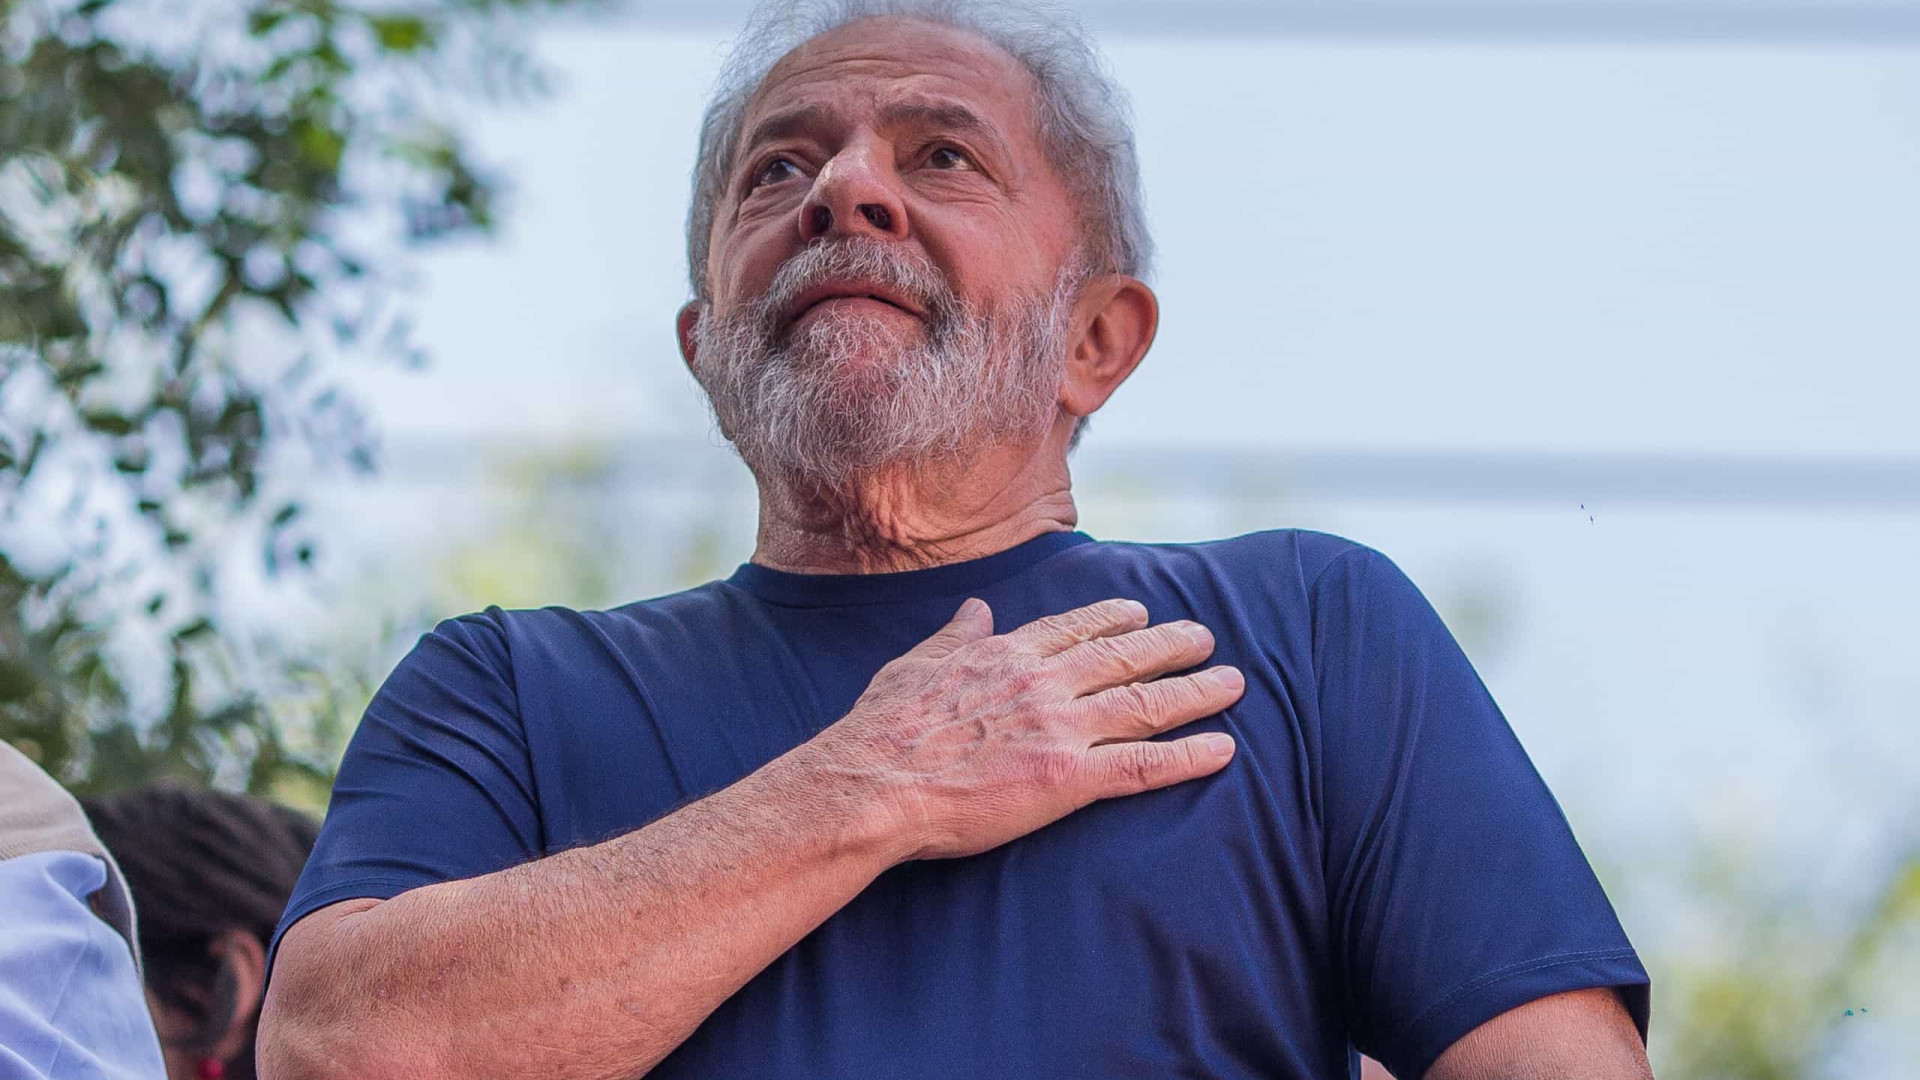 Nos últimos anos, andamos para trás; economia do Brasil encolheu, diz Lula